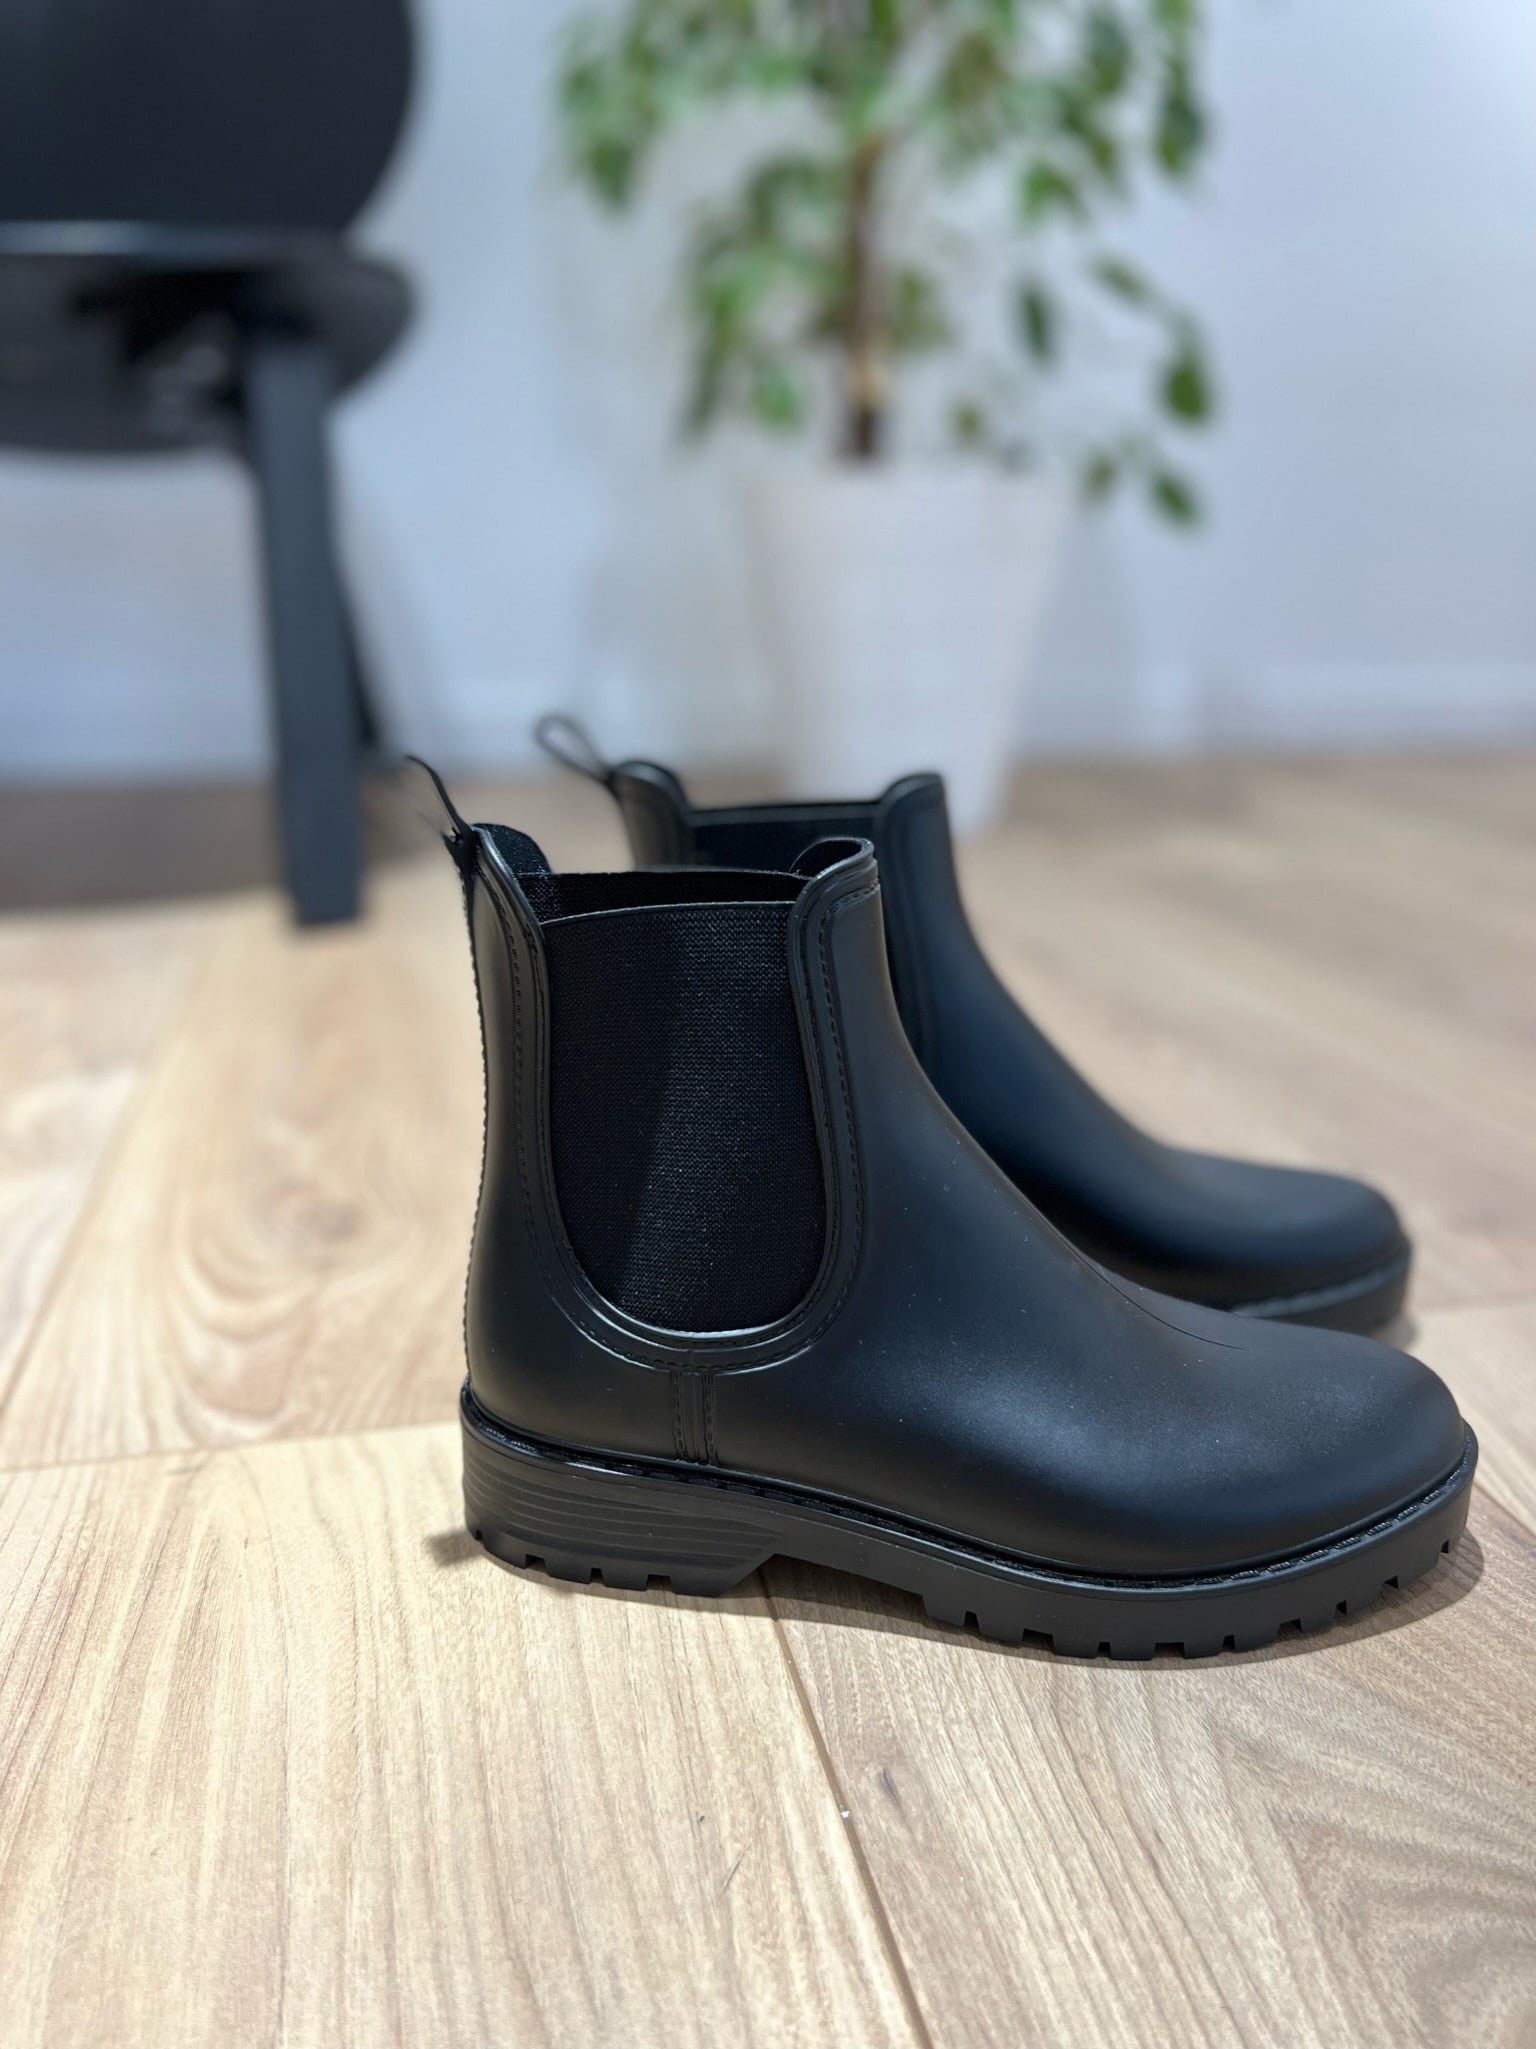 Boots de pluie - 3 Coloris